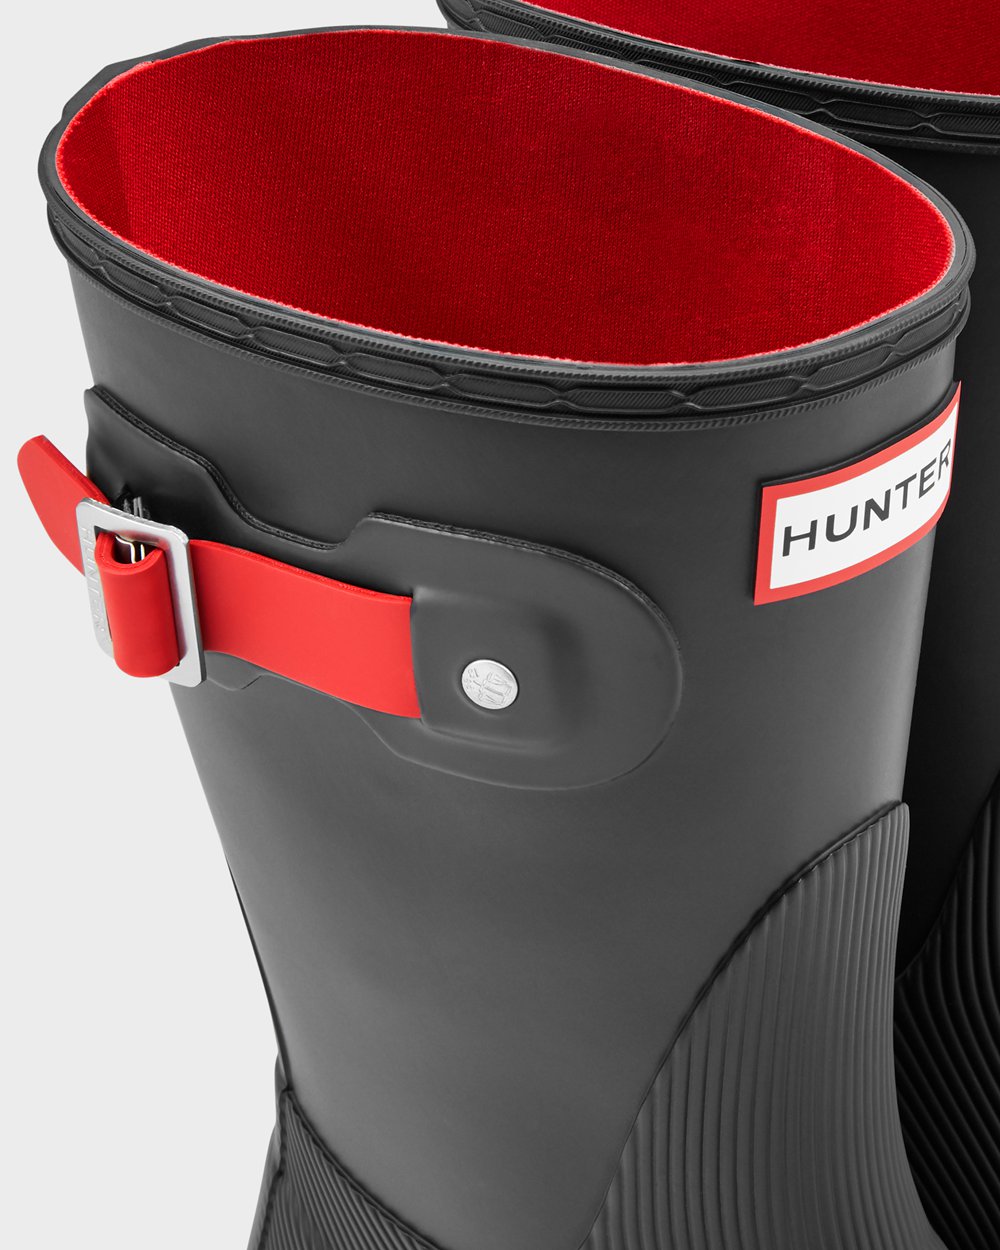 Womens Short Rain Boots - Hunter Original Flat Heel Calendar Sole (52TVQSYLC) - Black/Red